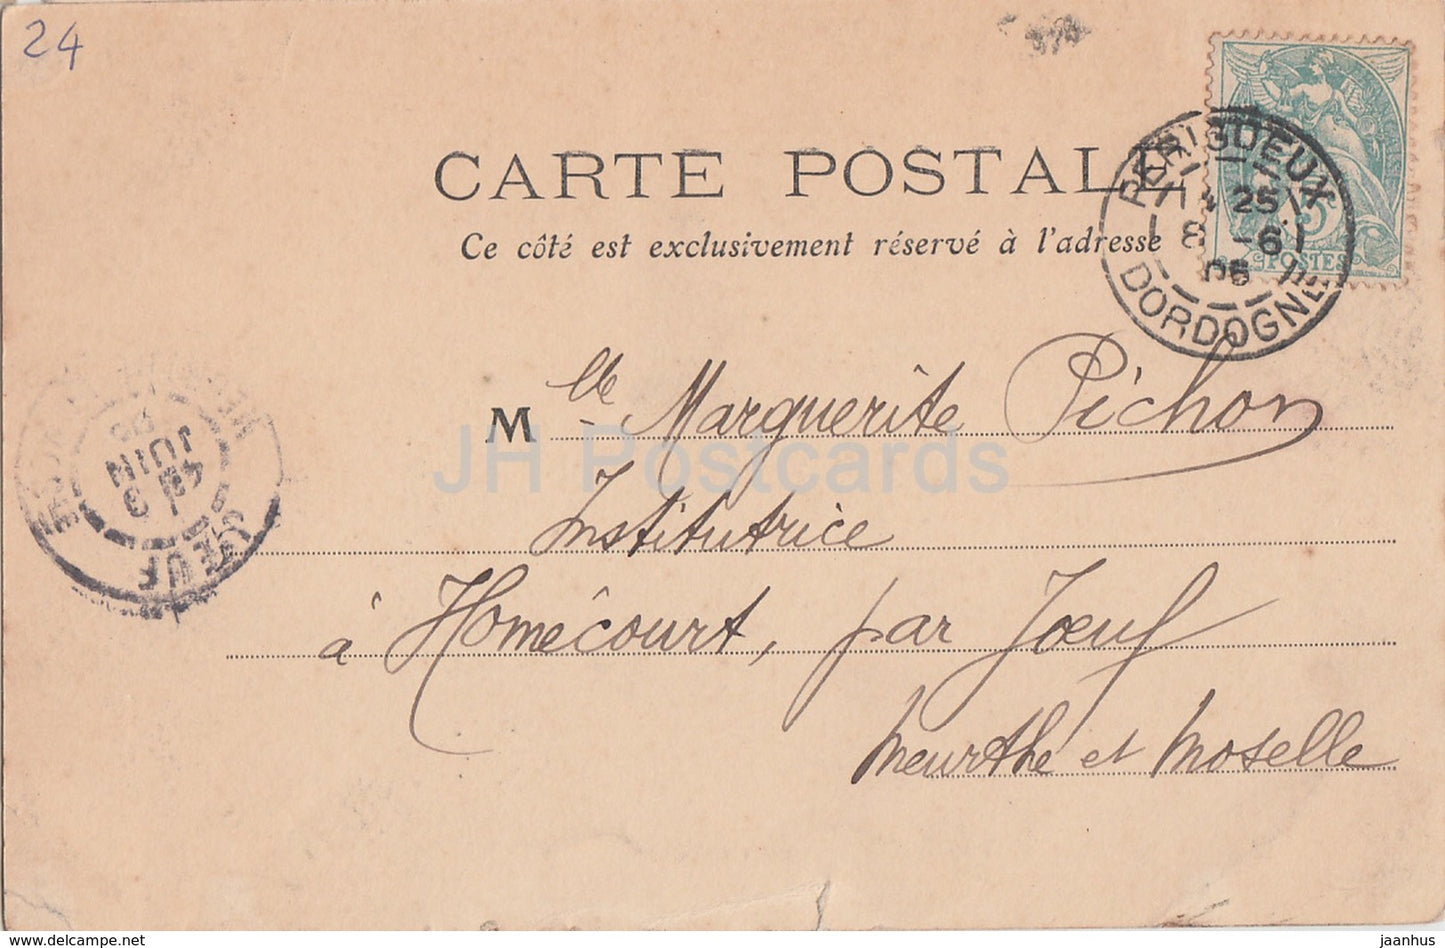 Perigueux - Dordogne - Entree de la Cathedrale St Front - Kathedrale - 61 - alte Postkarte - 1906 - Frankreich - gebraucht